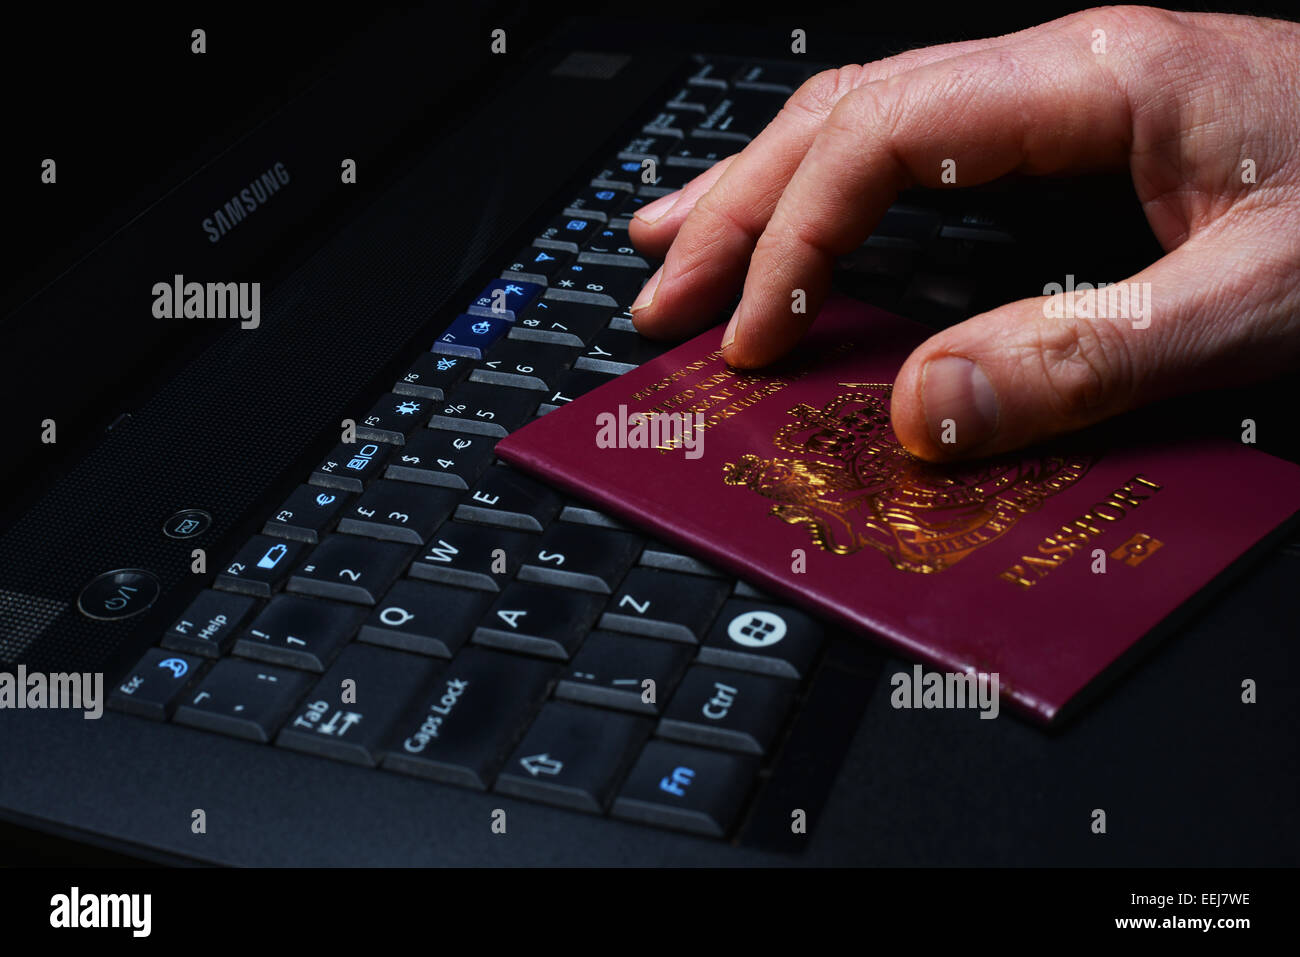 Online-Sicherheit und Identitätsdiebstahl ist ein wachsendes Problem für Internet-Nutzer. Stockfoto